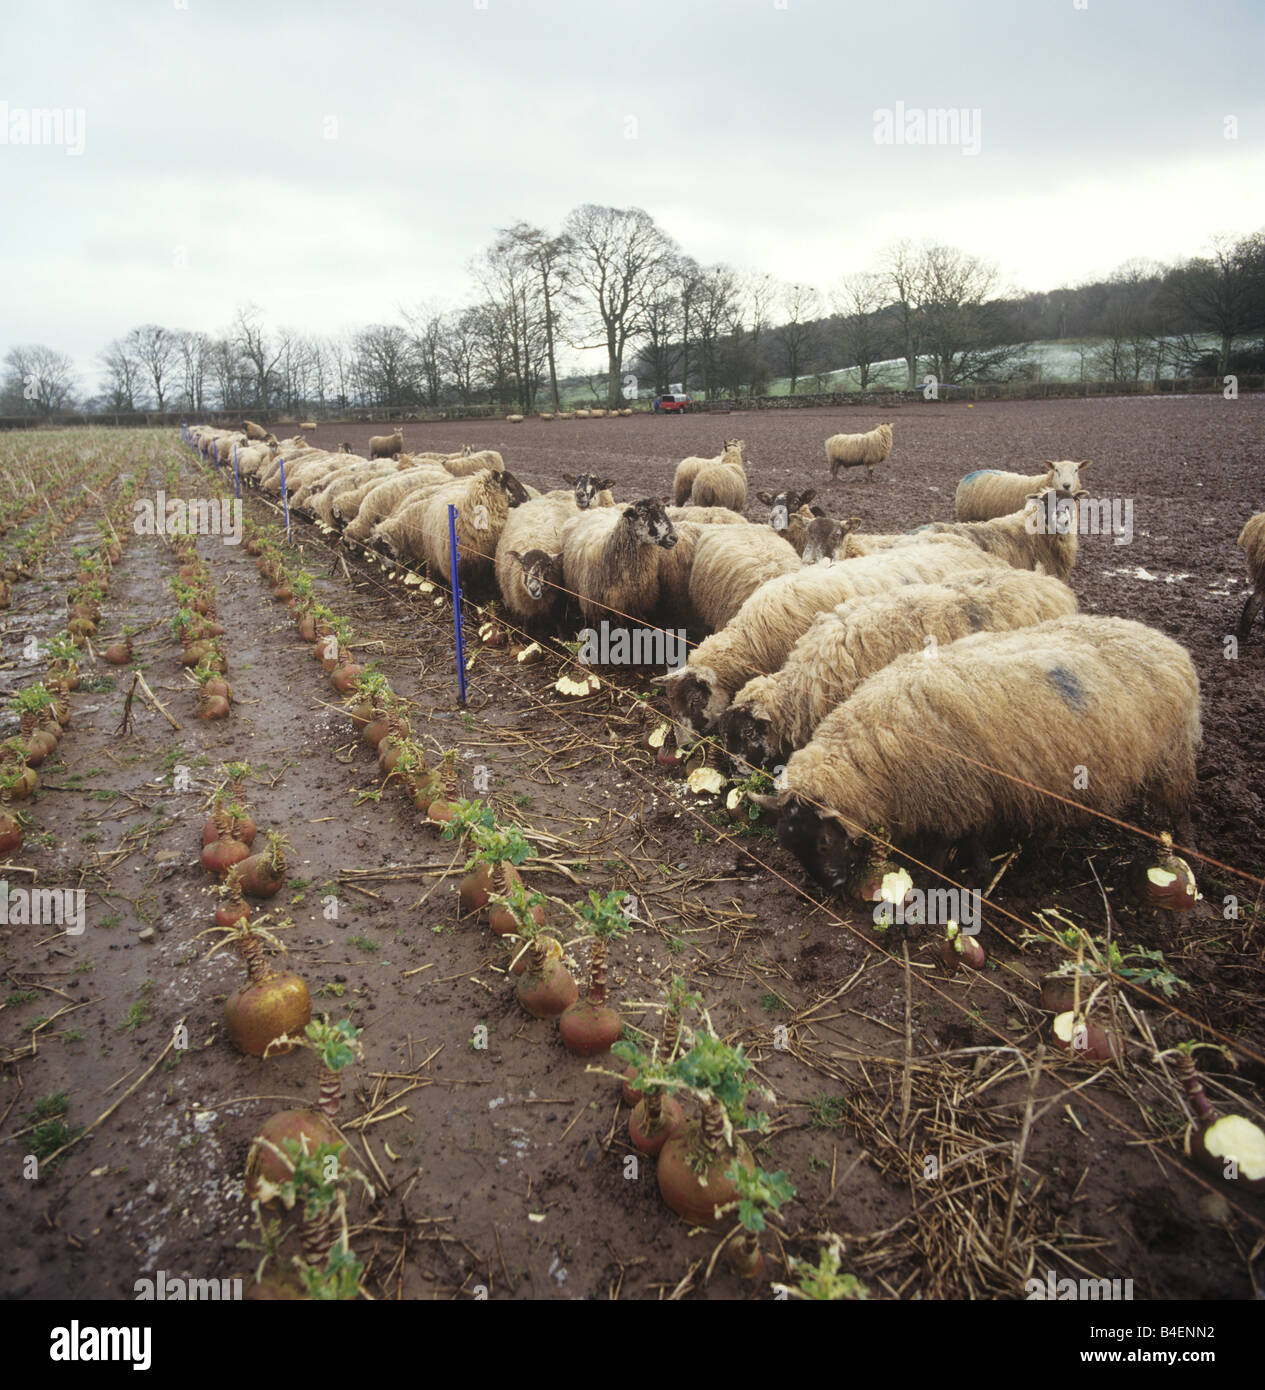 Al norte de Inglaterra mula OVEJA oveja cazando suecos en las húmedas tierras de invierno sombrío Foto de stock